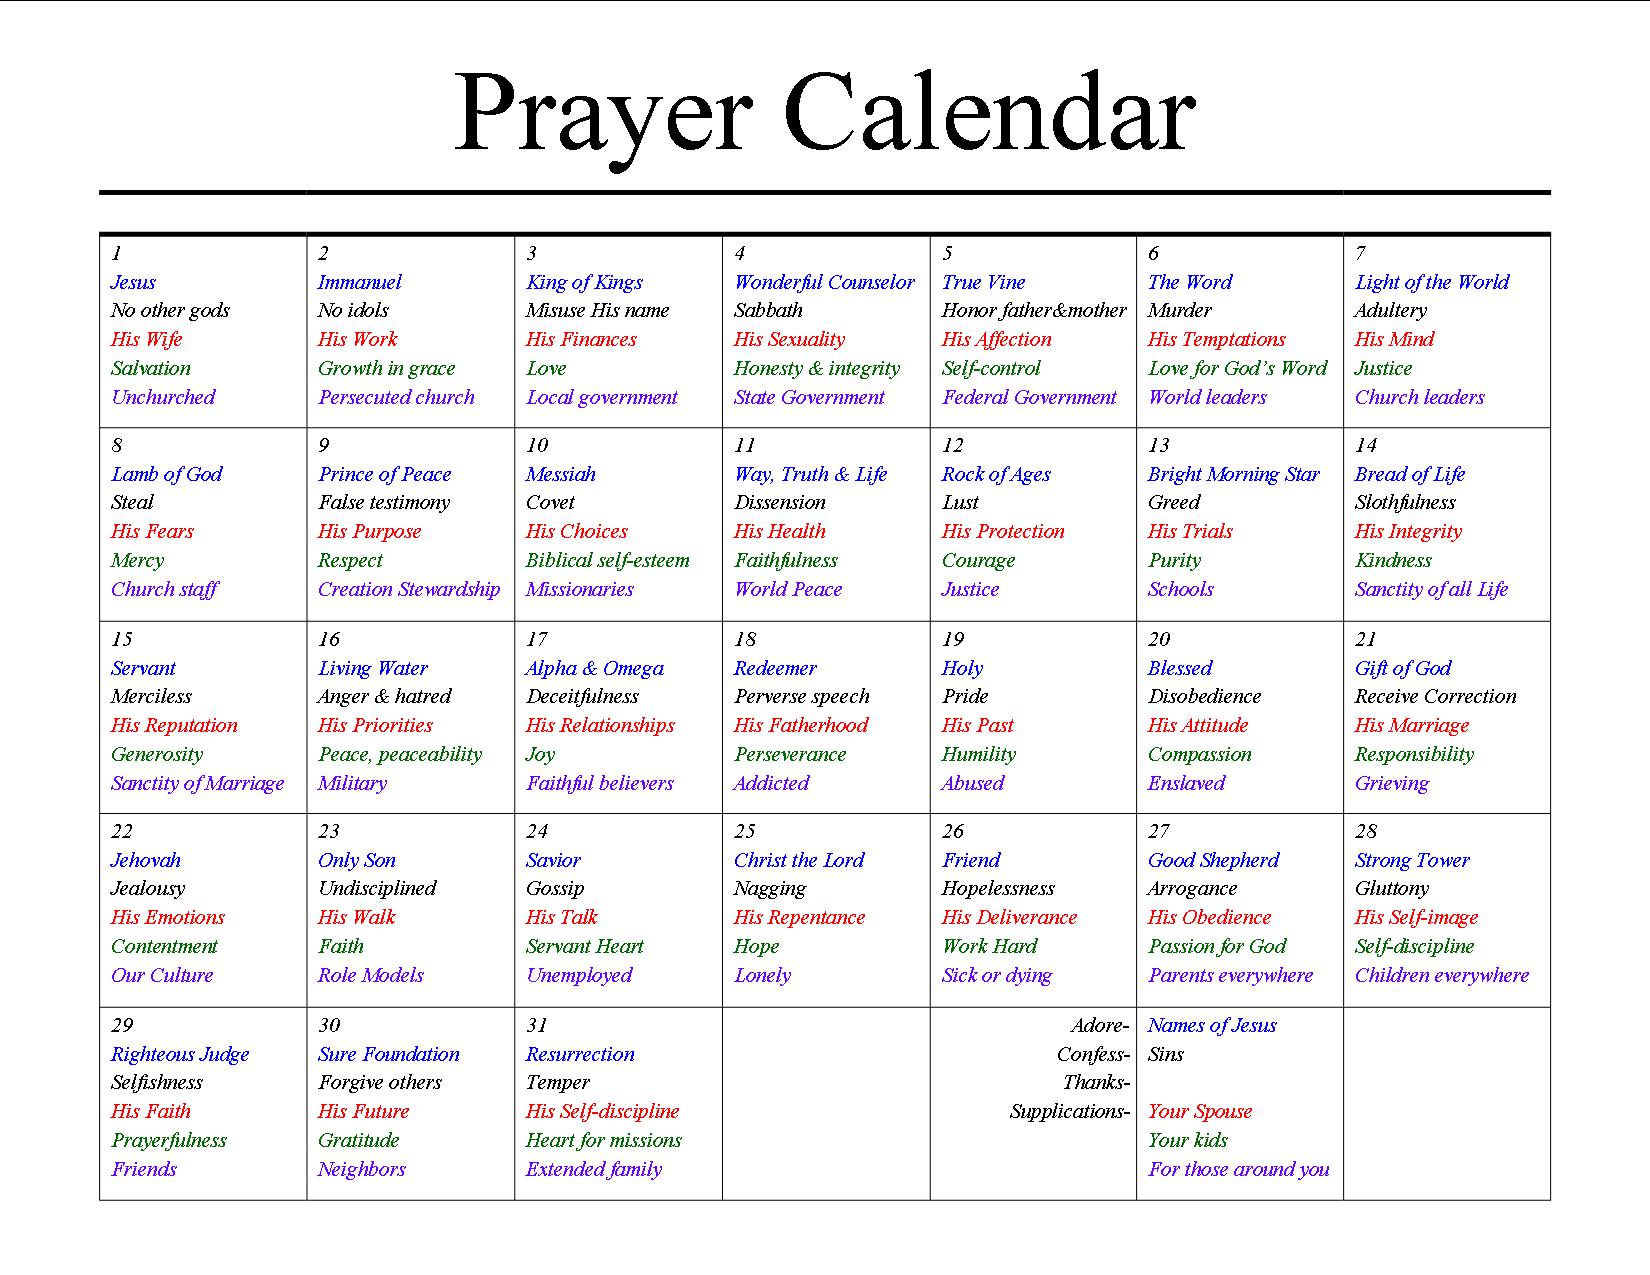 a-prayer-calendar-stacy-nickels